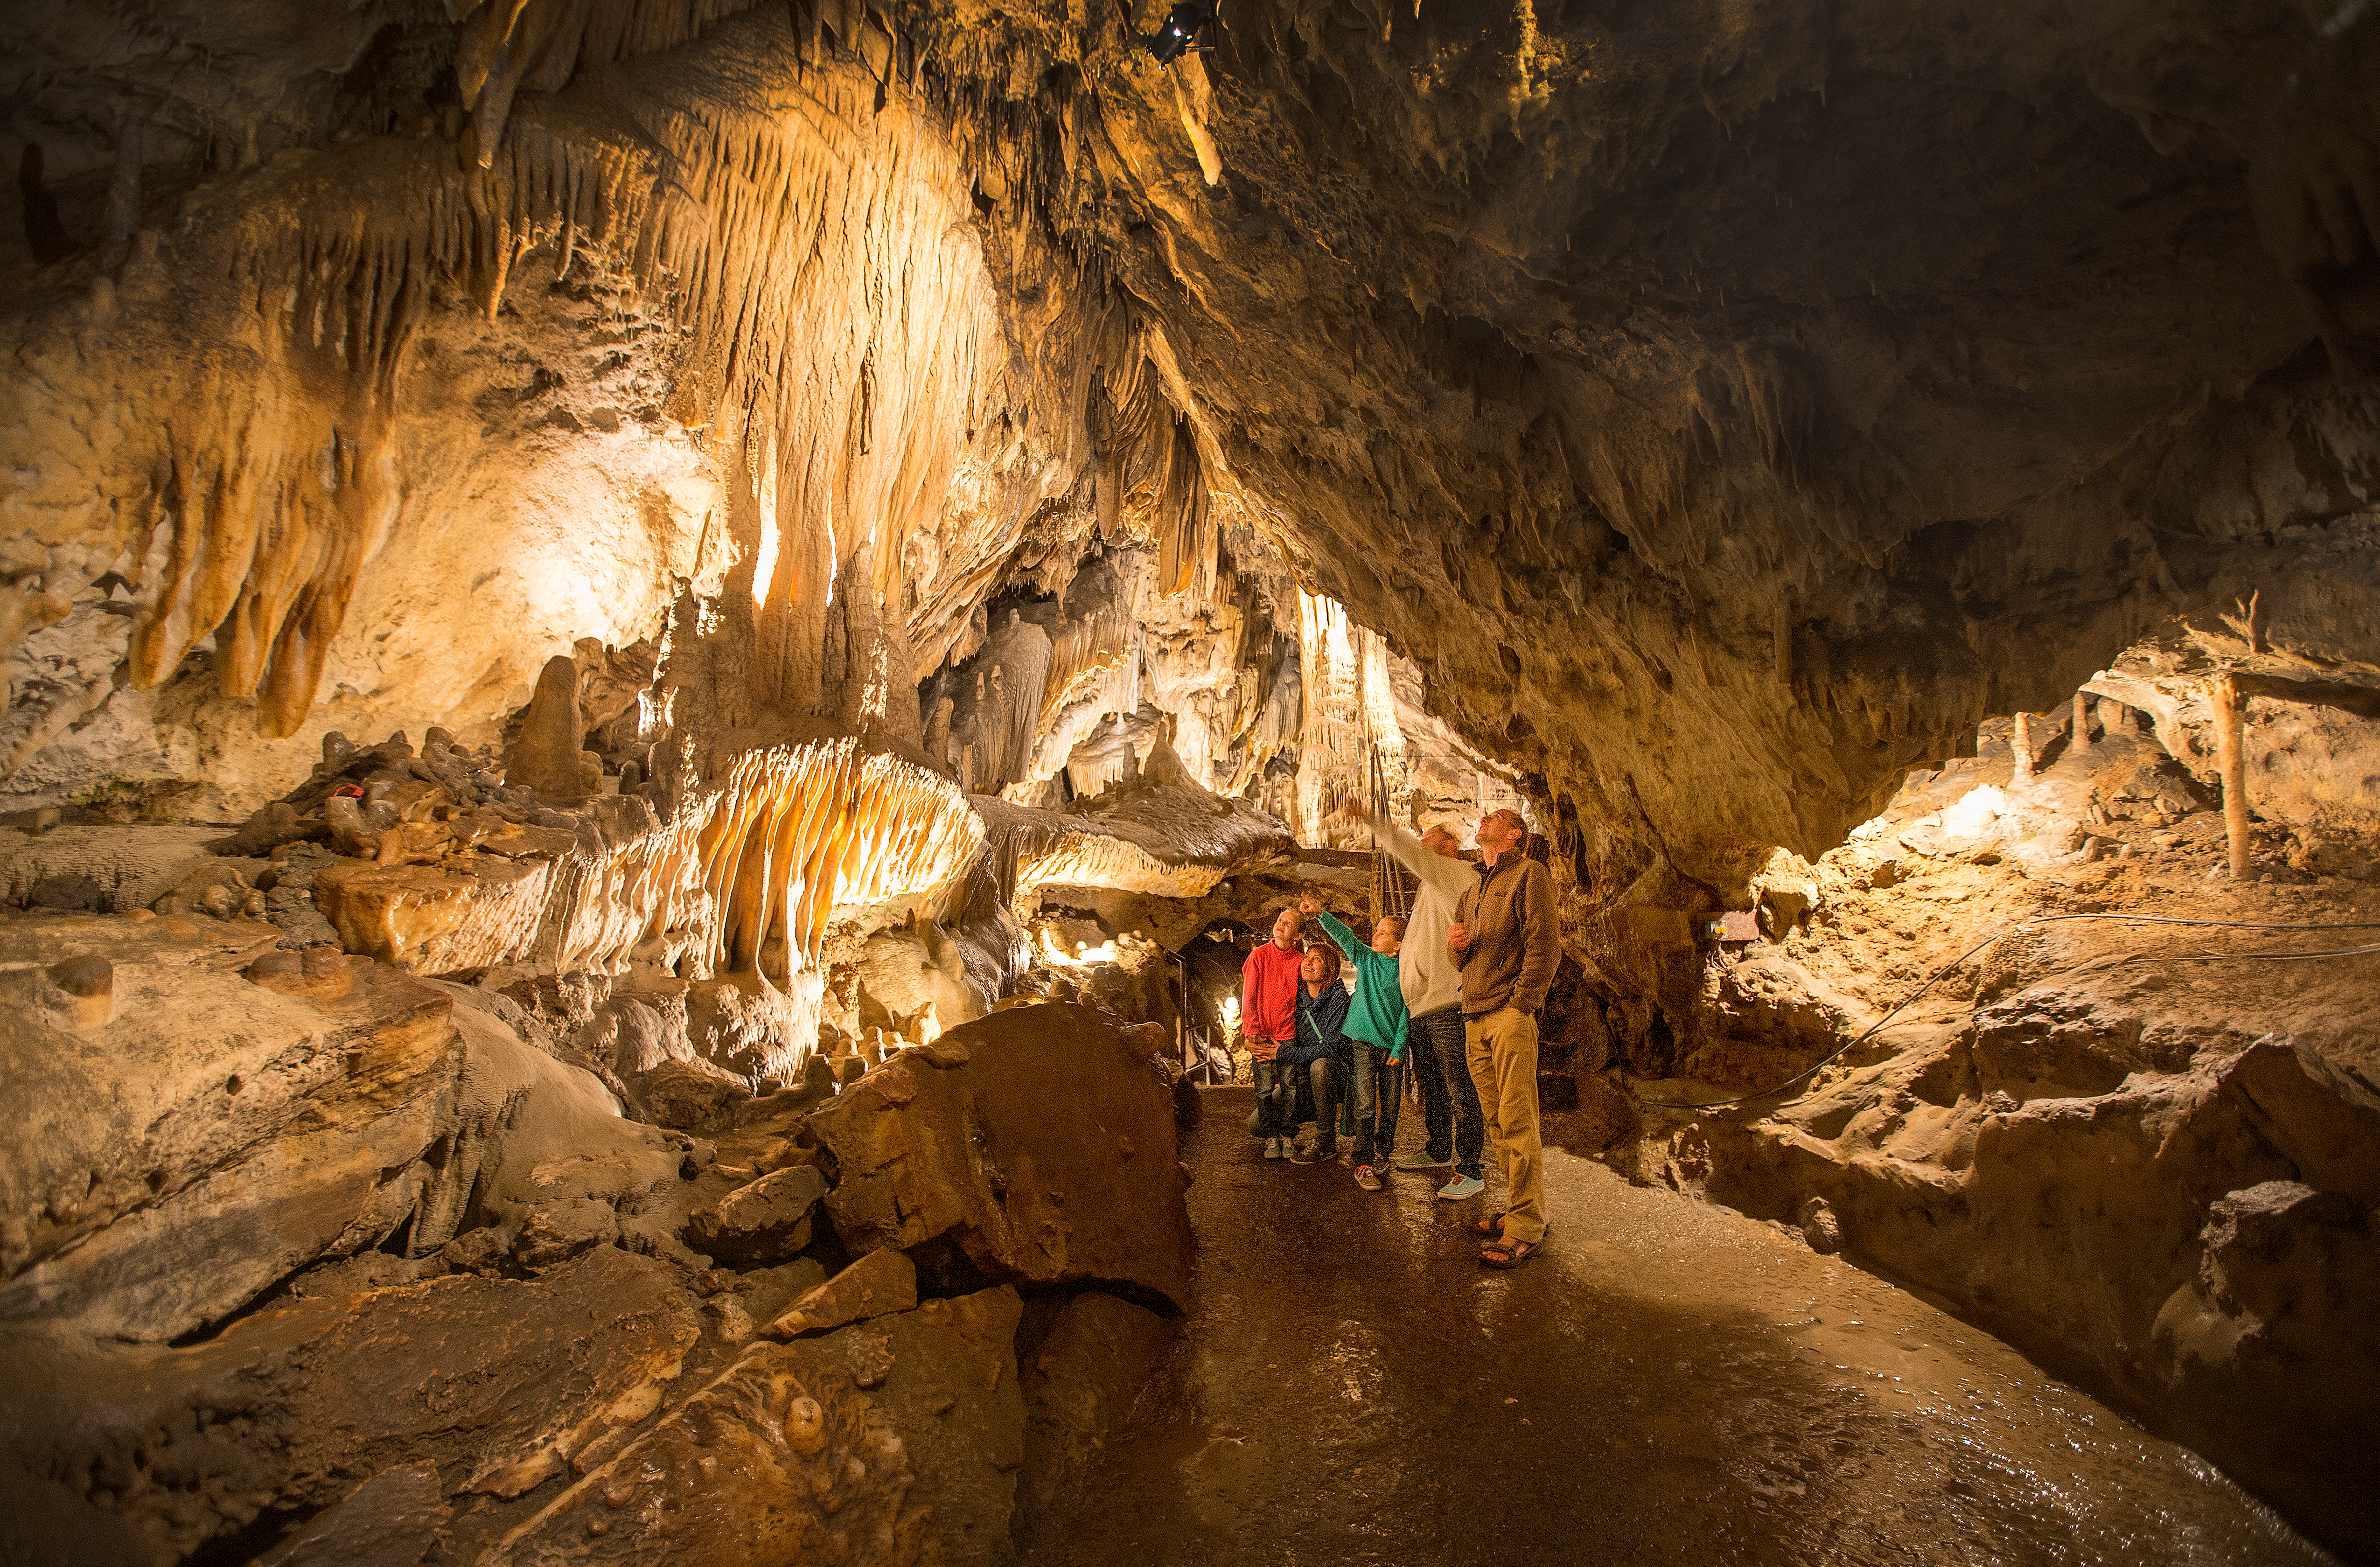 Venez découvrir le Domaine des Grottes de Han-sur-Lesse à Rochefort, province de Namur